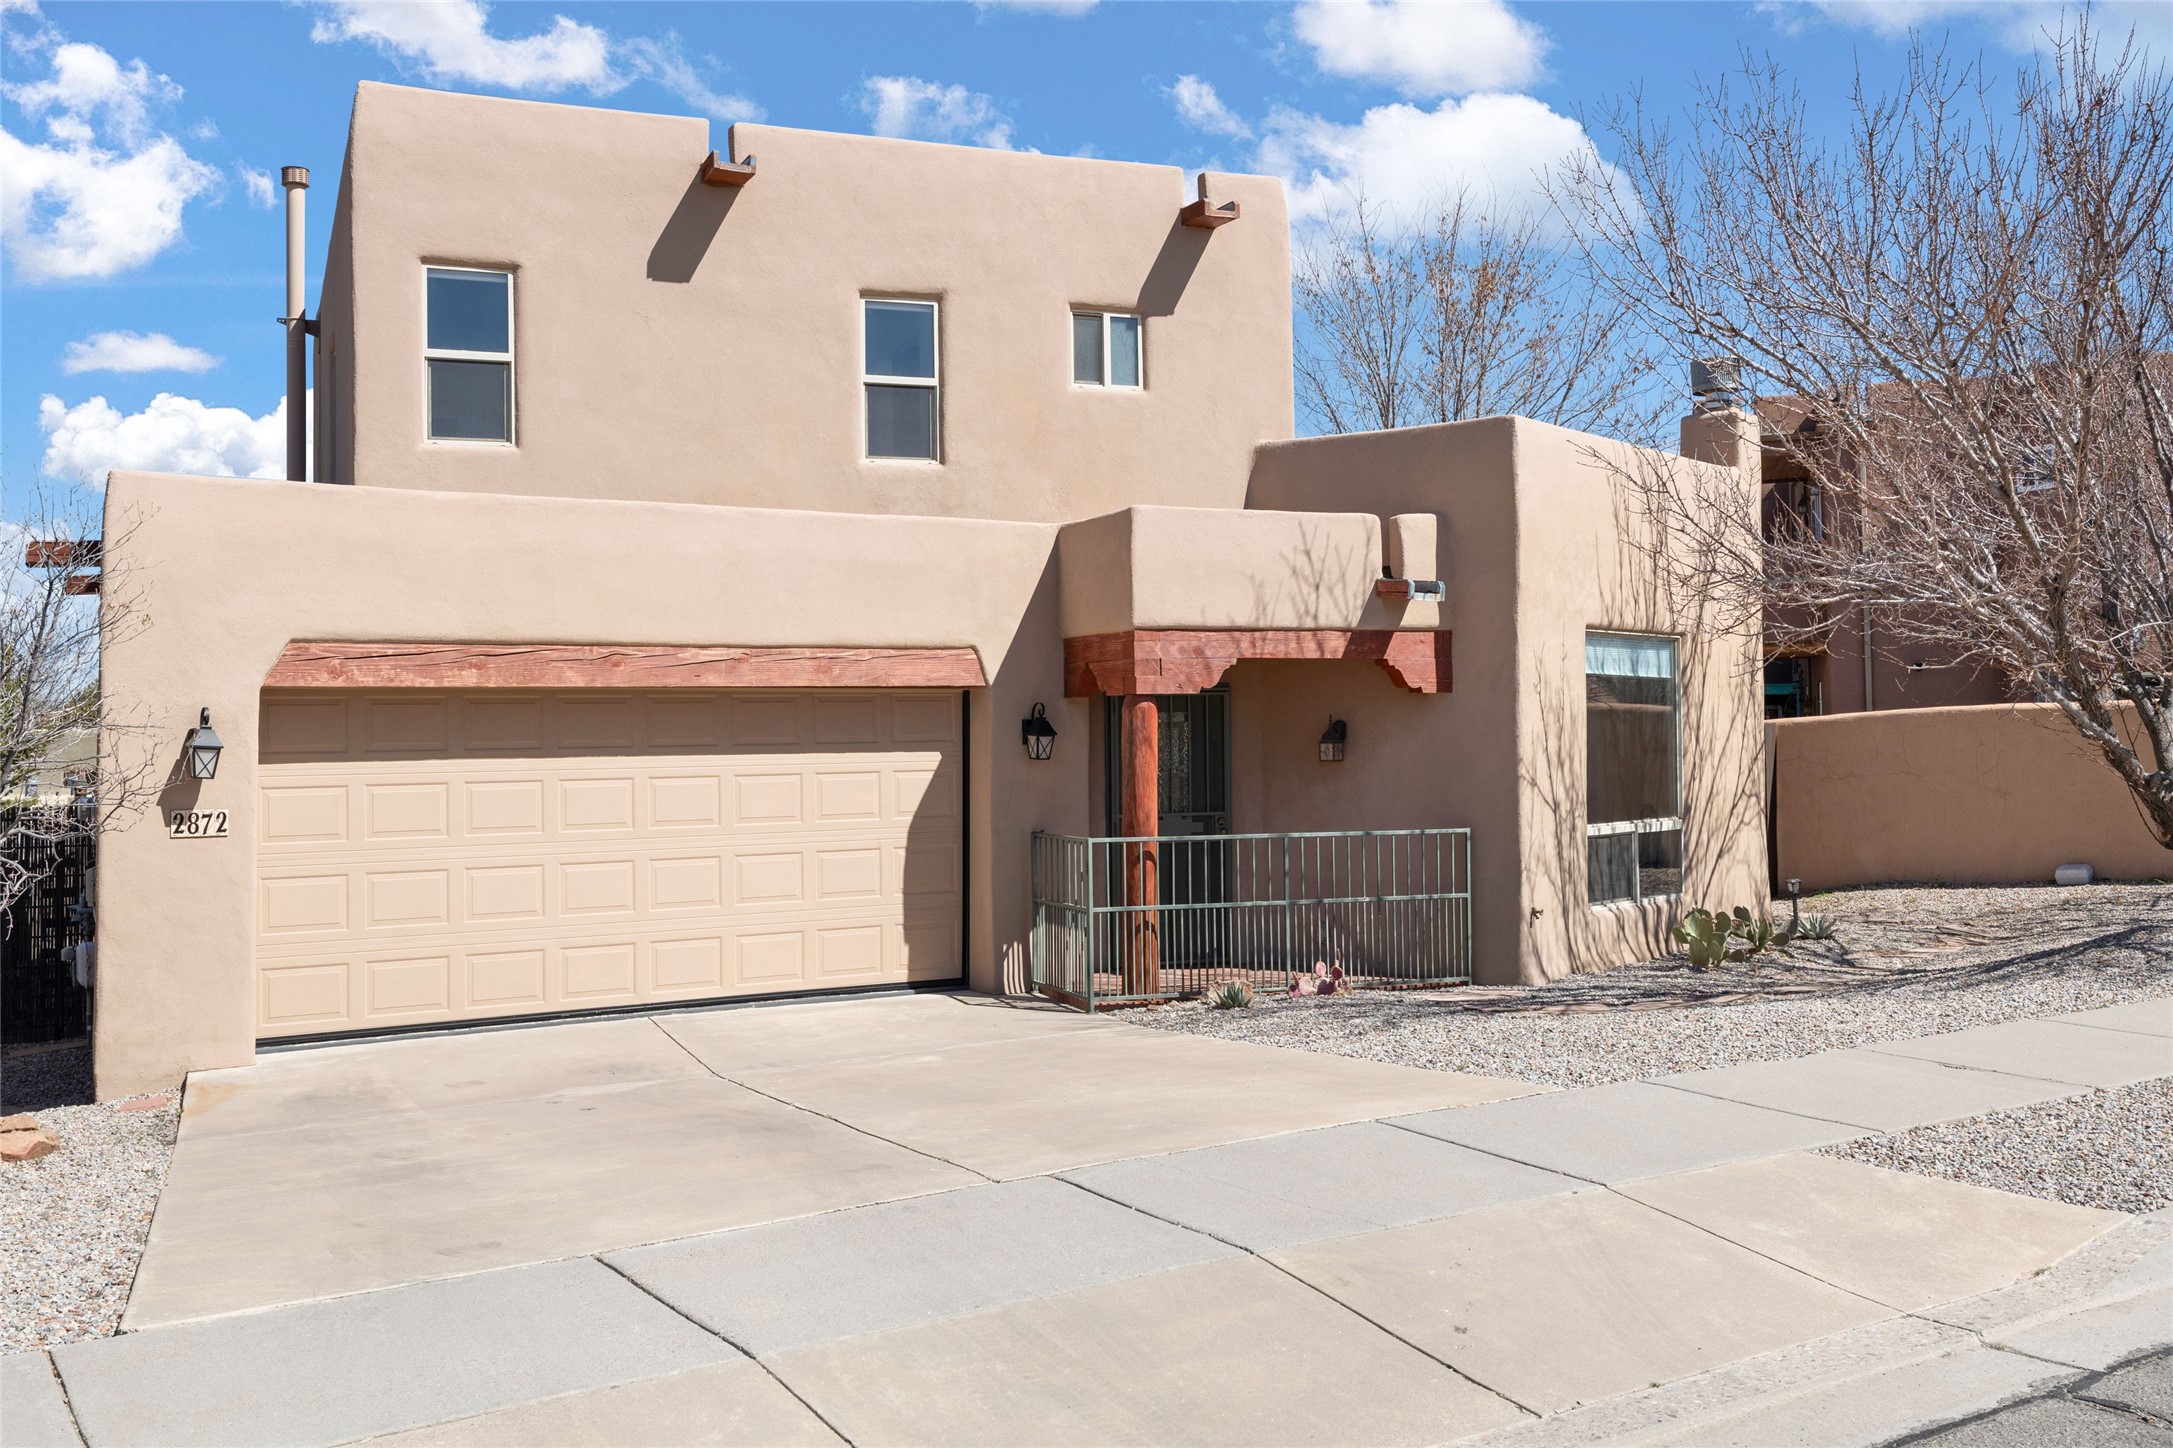 2872 Pueblo Bonito, Santa Fe, New Mexico 87507, 3 Bedrooms Bedrooms, ,3 BathroomsBathrooms,Residential,For Sale,2872 Pueblo Bonito,202401317